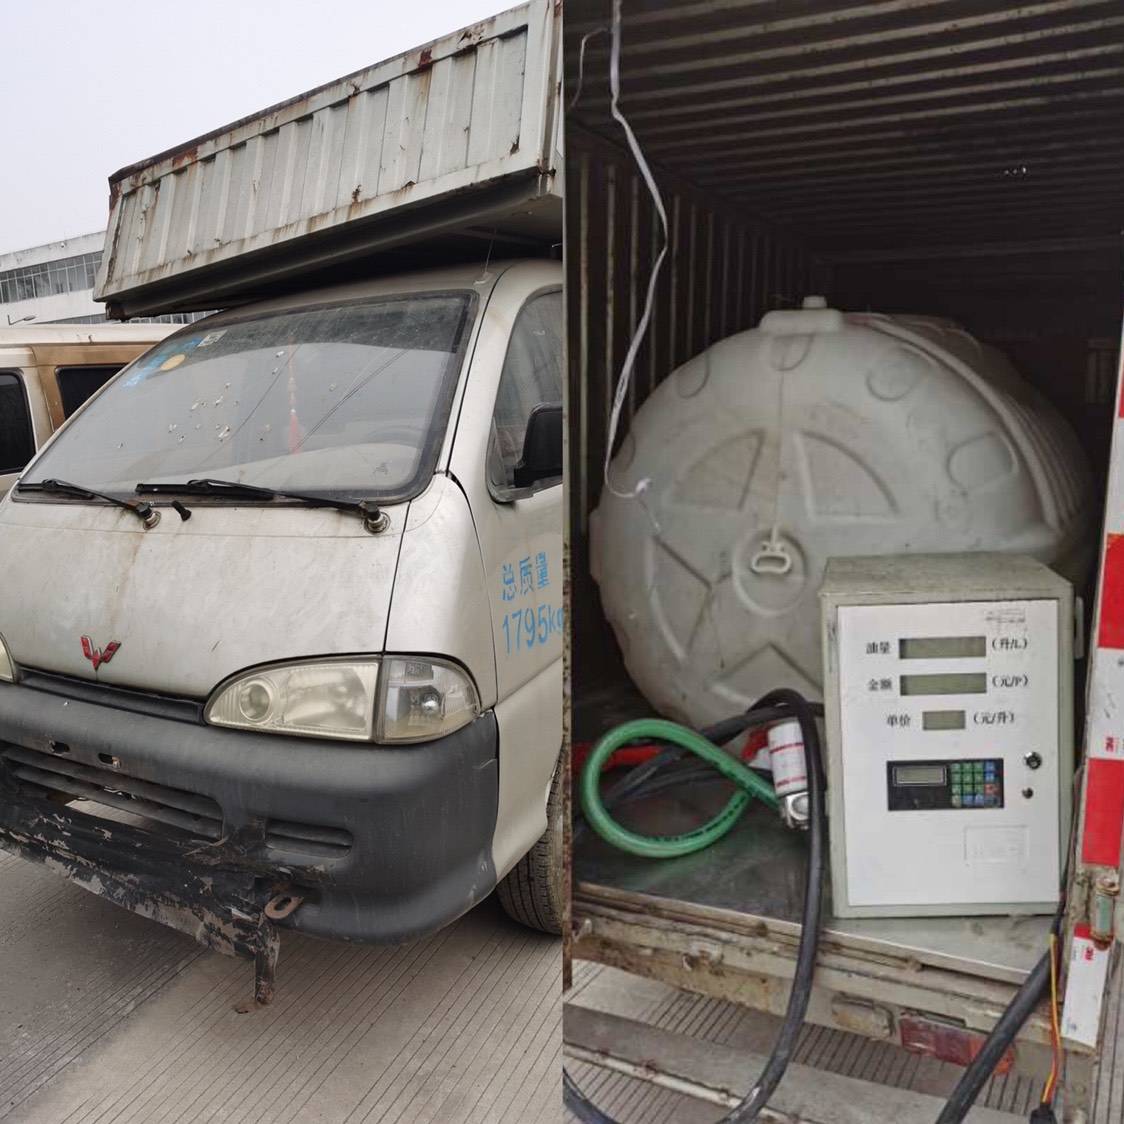 柳州市执法部门查扣一辆非法改装流动加油车